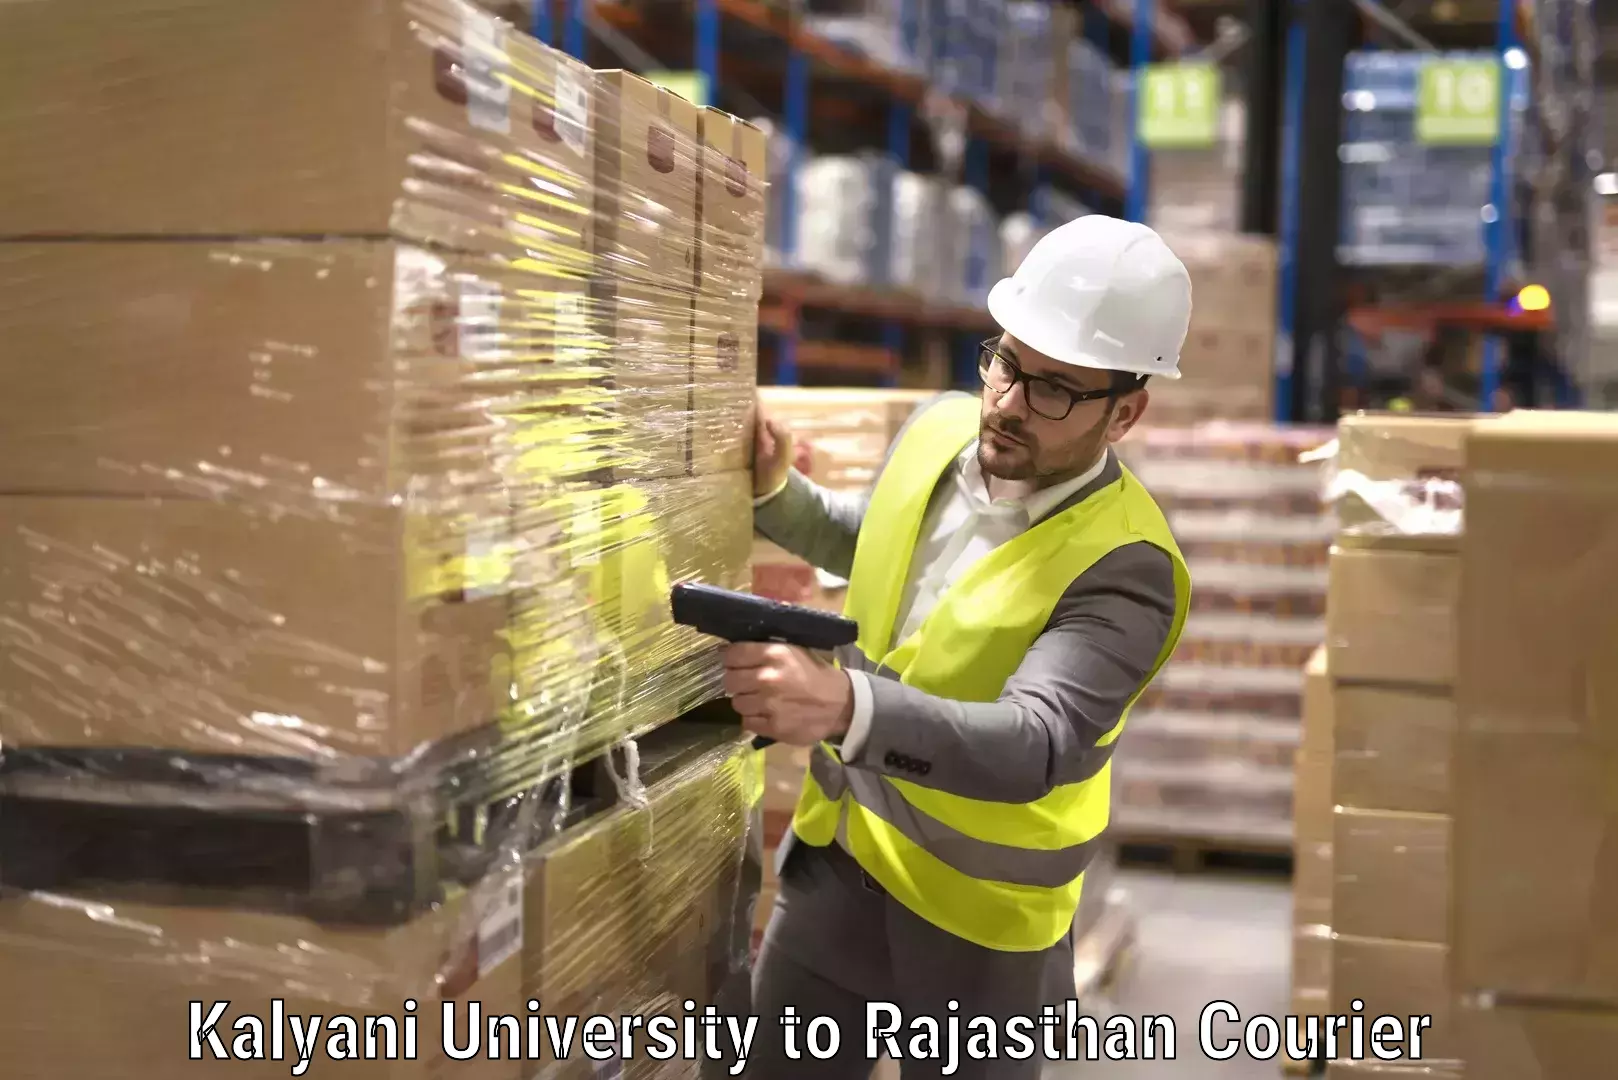 Efficient packing and moving Kalyani University to Rajasthan